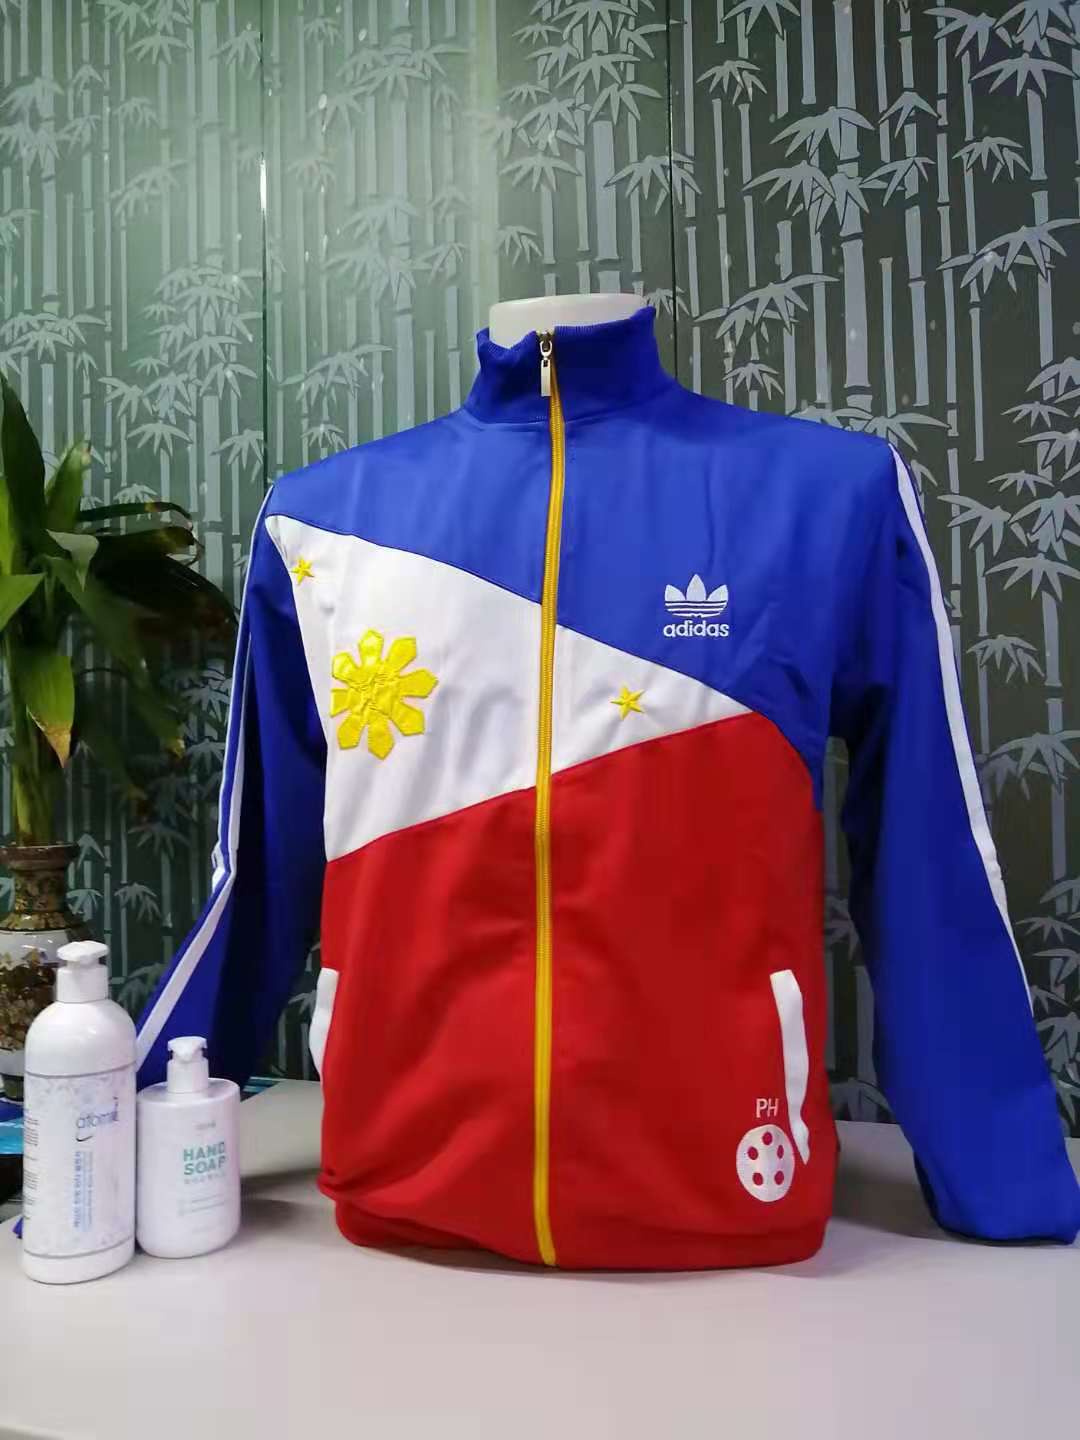 philippine flag jacket adidas